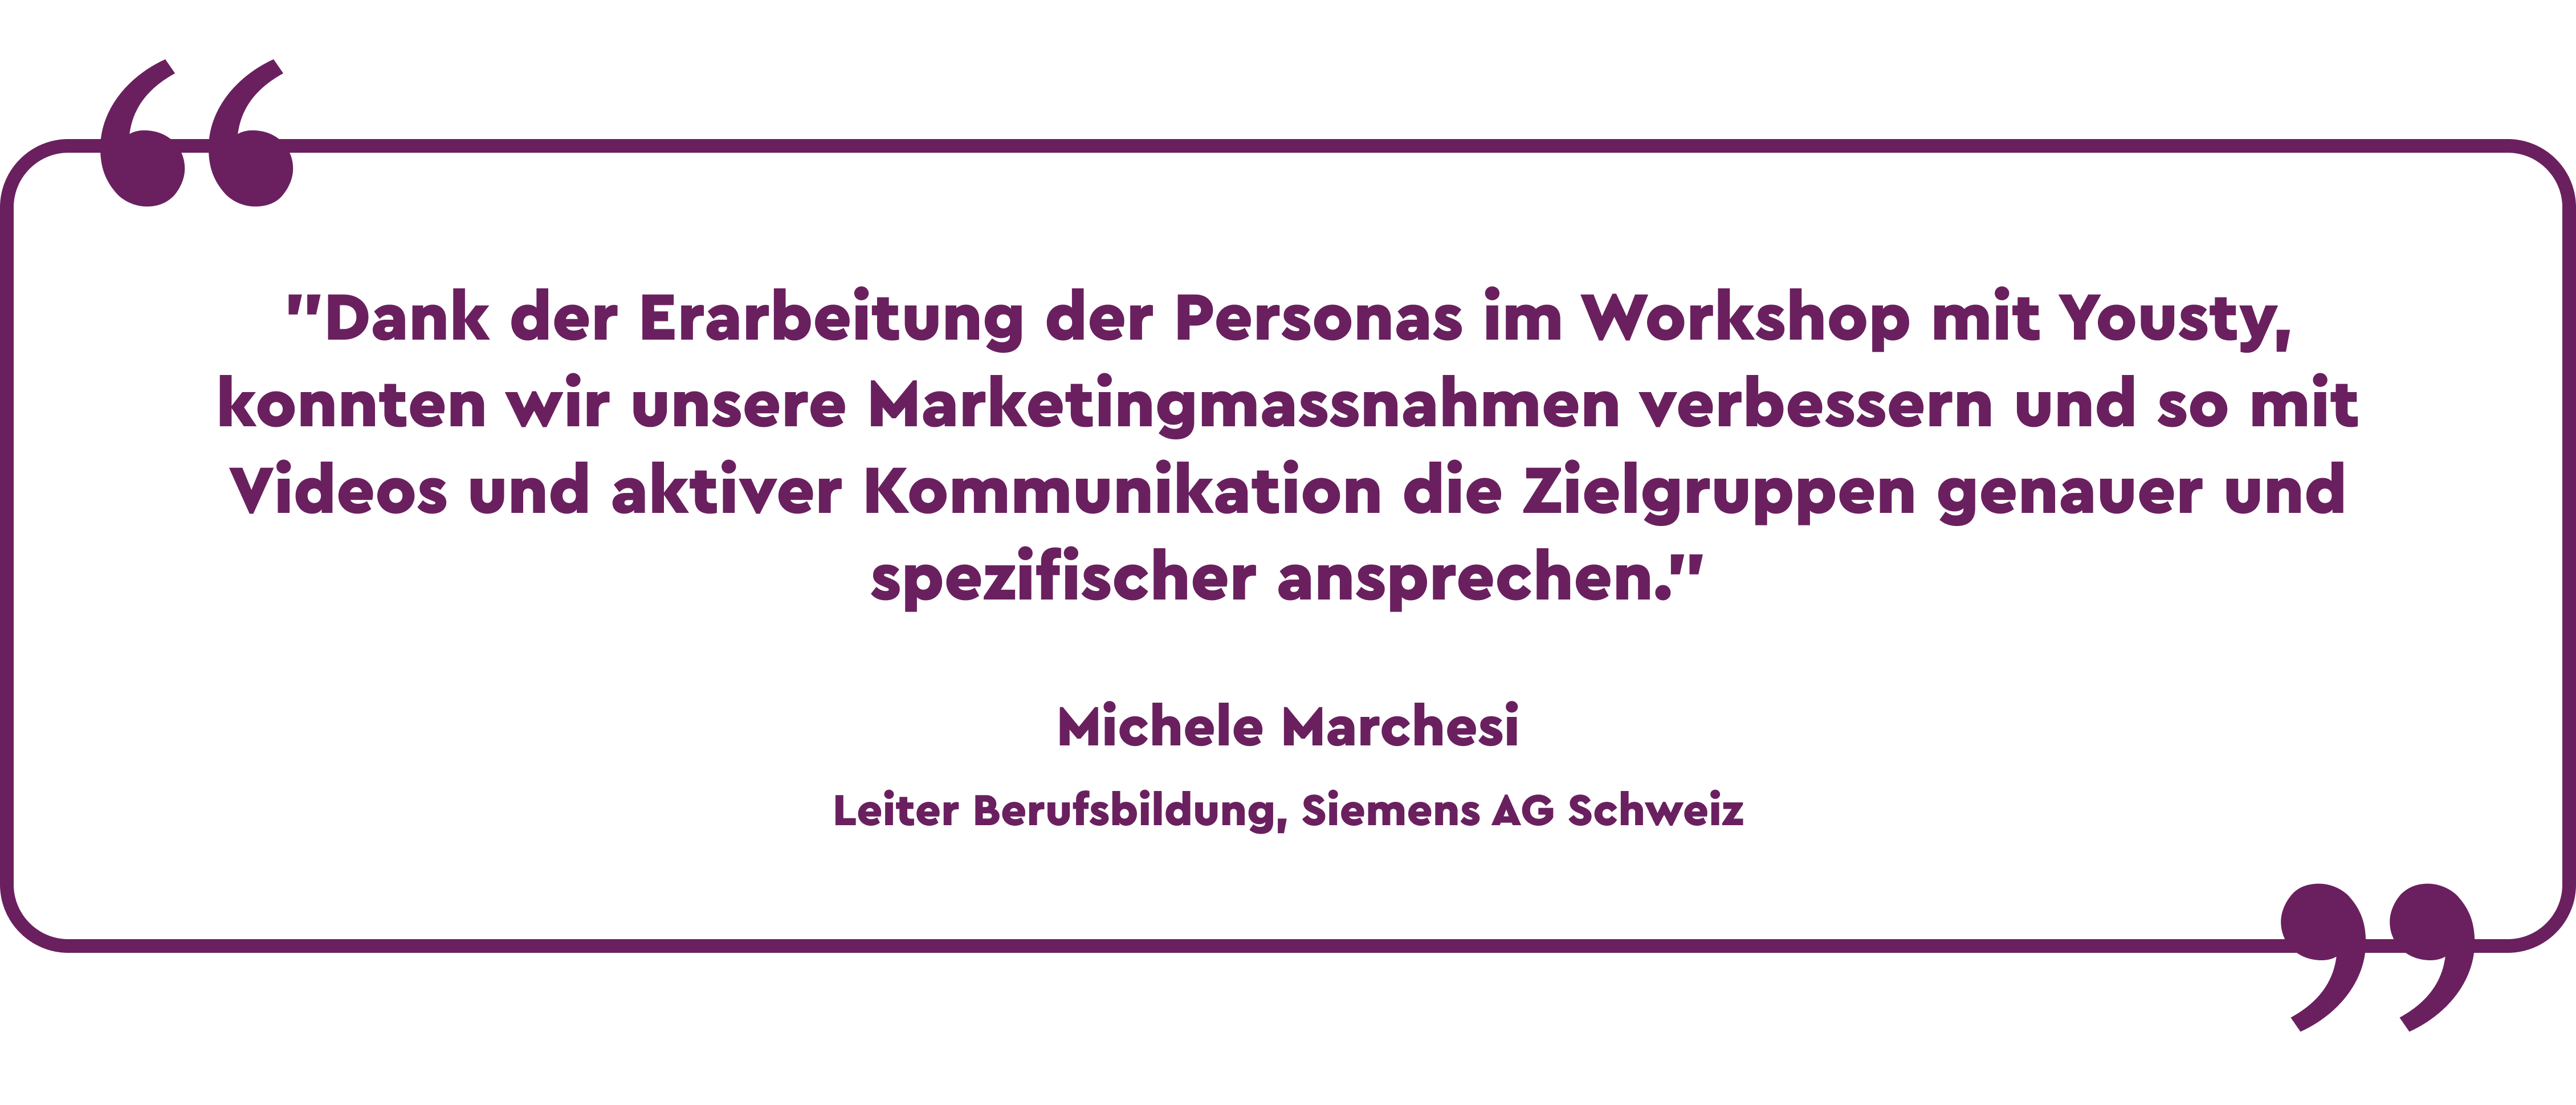 Zitat Michele Marchesi Siemens AG Schweiz: Dank der Erarbeitung der Personas im Workshop mit Yousty, konnten wir unsere Marketingmassnahmen verbessern und so mit Videos und aktiver Kommunikation die Zielgruppen genauer und spezifischer ansprechen.